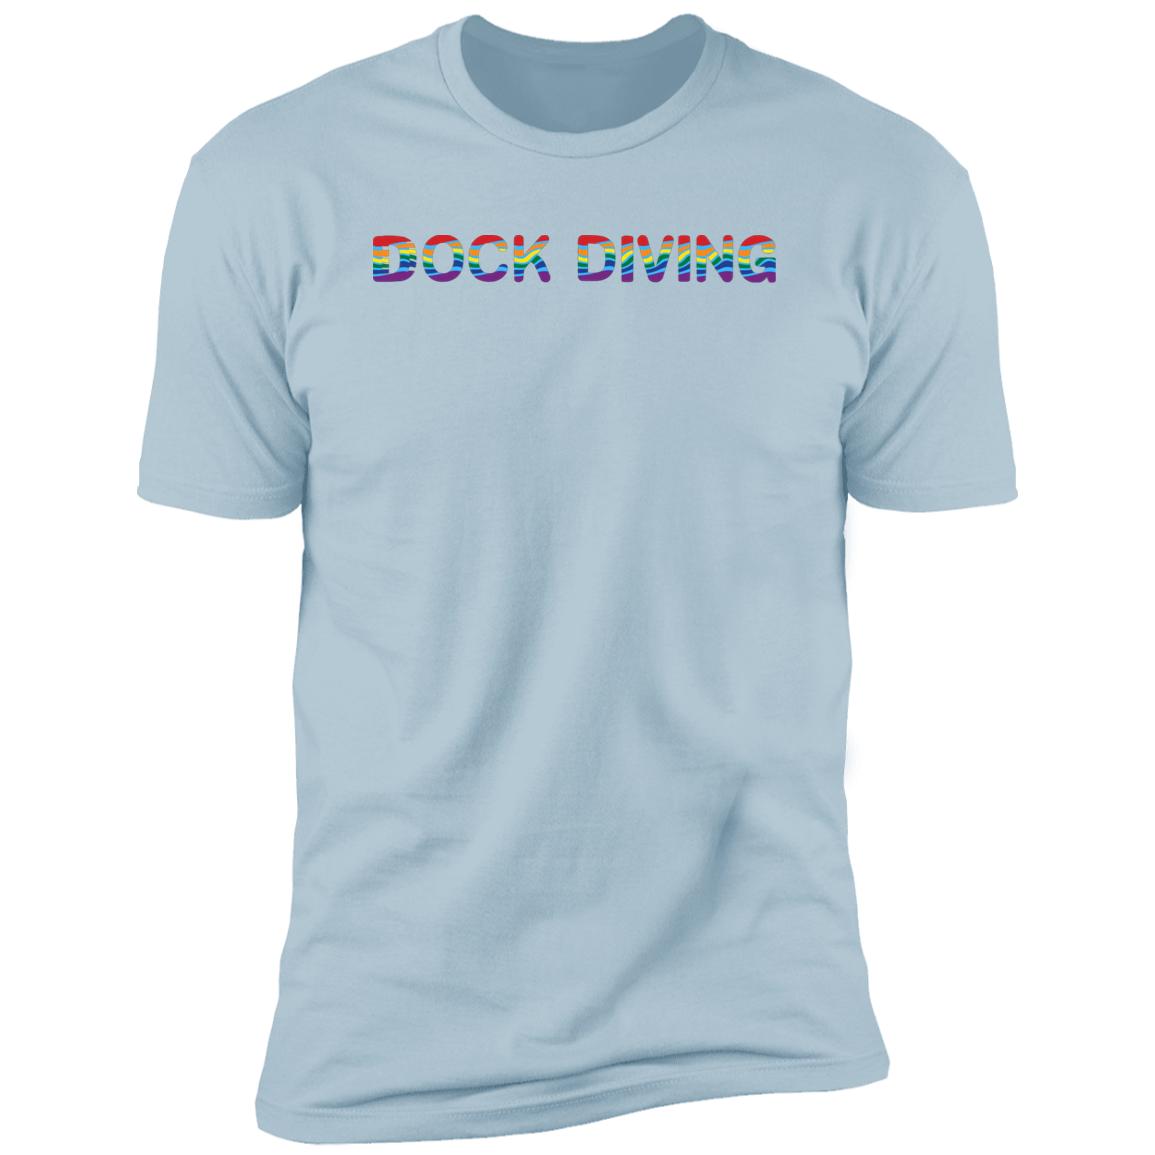 Dock Diving Pride Dock diving t-shirt, dog pride dock diving shirt for humans, in light blue